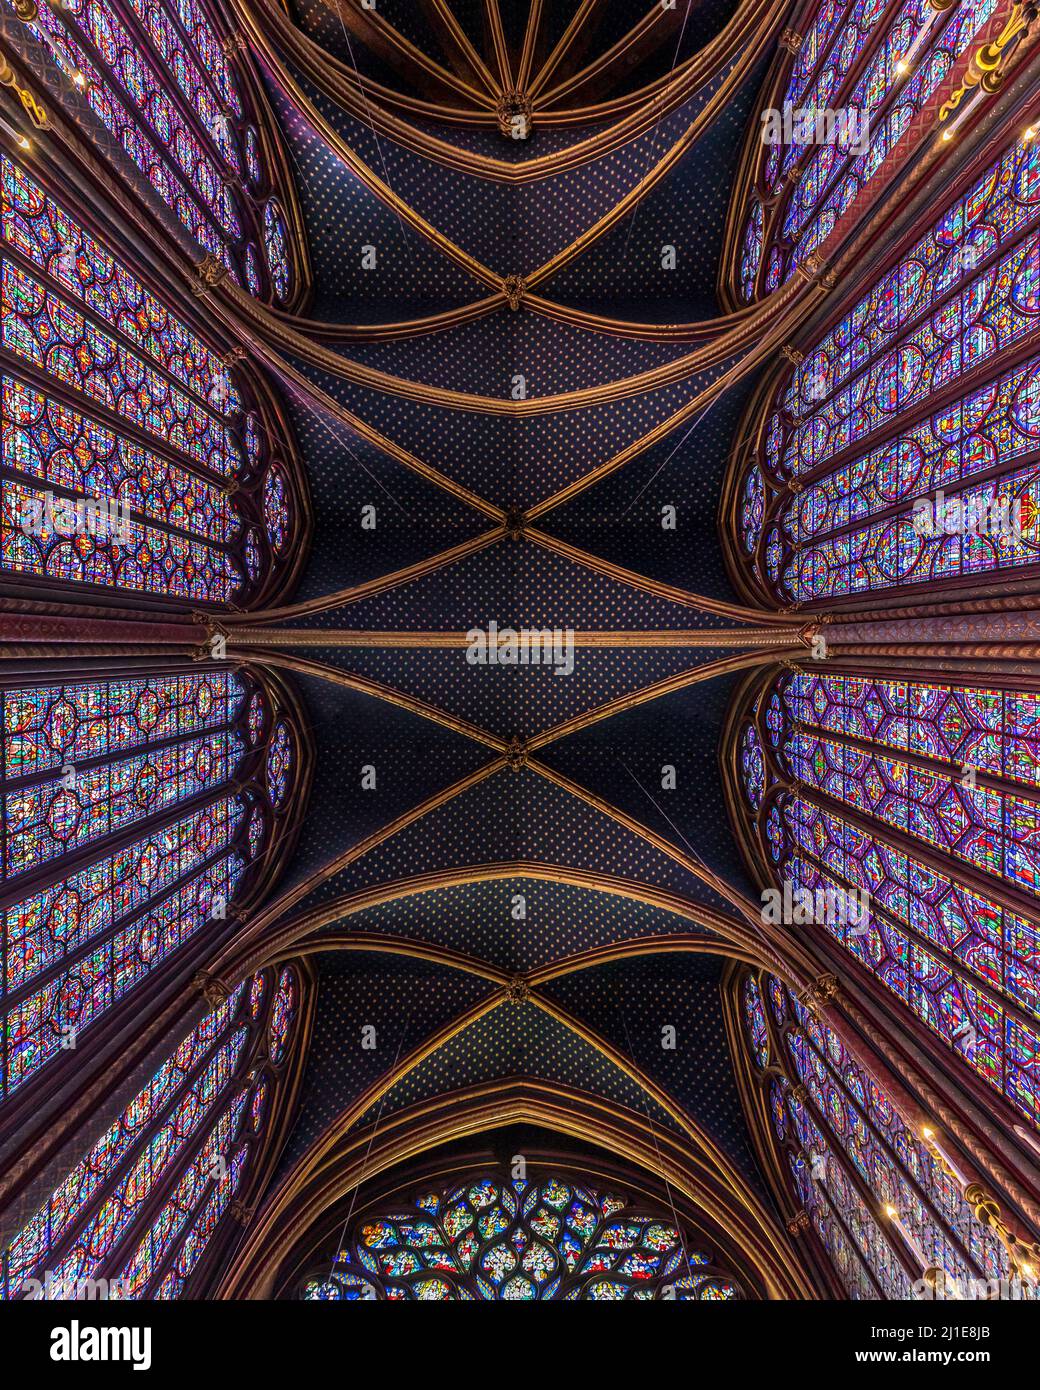 Paris, France - 19 septembre 2021 : plafond de la Sainte-Chapelle, église gothique à Paris Banque D'Images